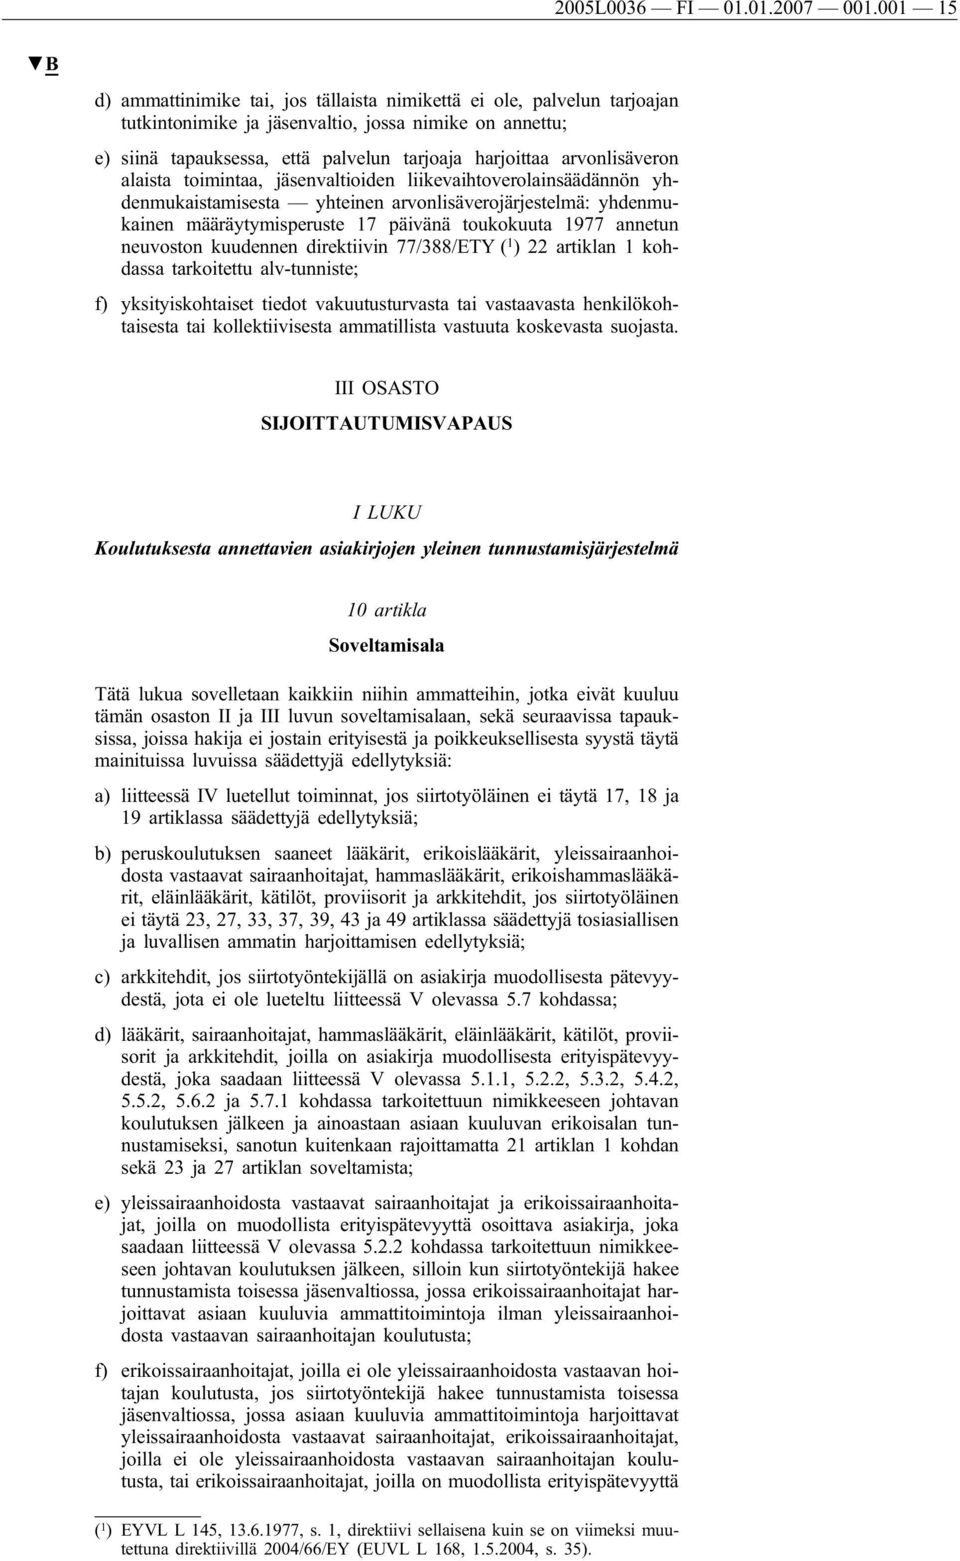 arvonlisäveron alaista toimintaa, jäsenvaltioiden liikevaihtoverolainsäädännön yhdenmukaistamisesta yhteinen arvonlisäverojärjestelmä: yhdenmukainen määräytymisperuste 17 päivänä toukokuuta 1977